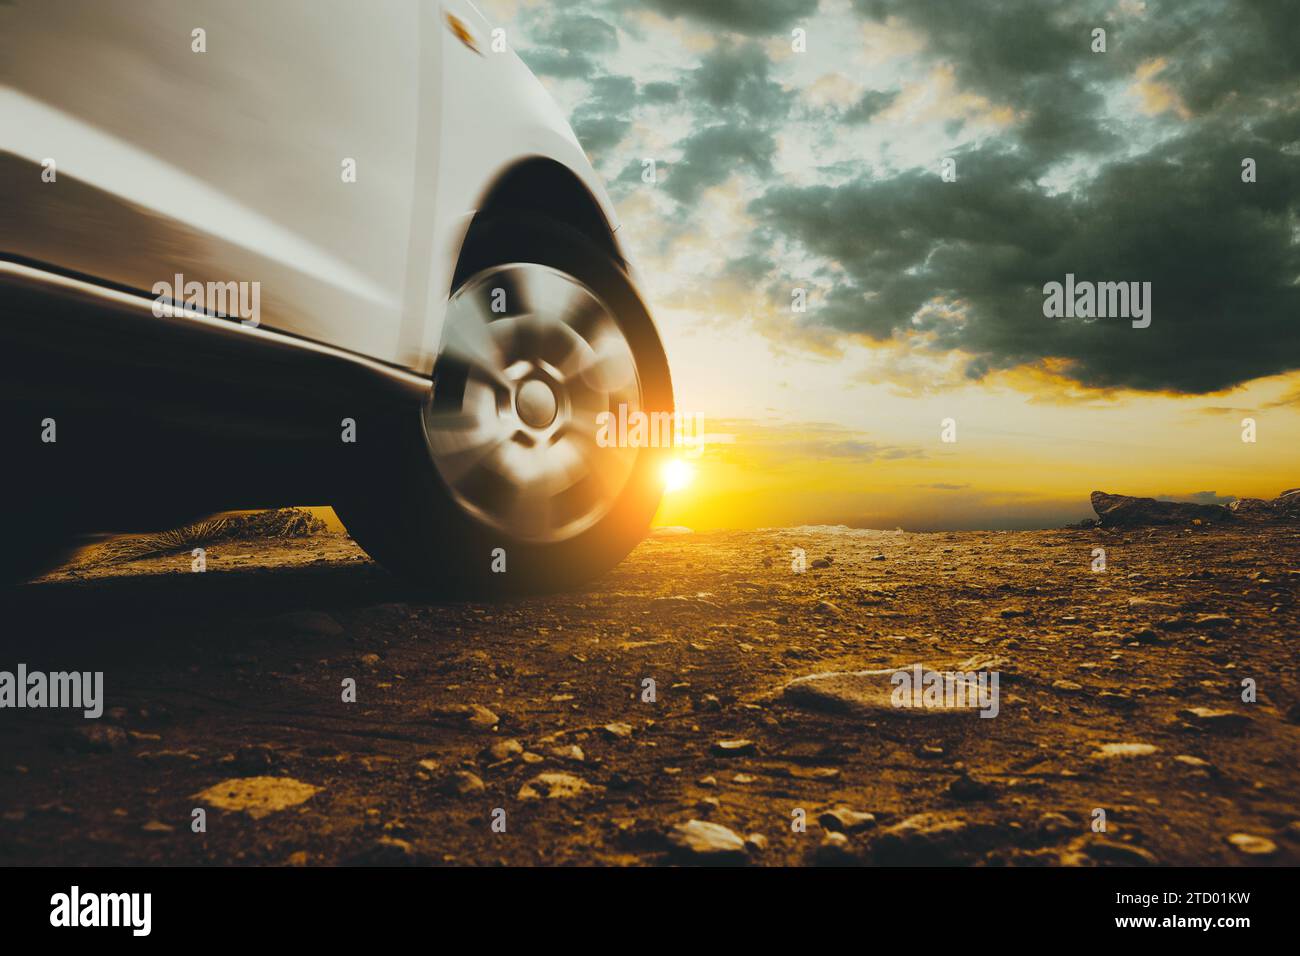 Immagine chiusa di ruote e pneumatici per auto a terra e cielo al tramonto Foto Stock